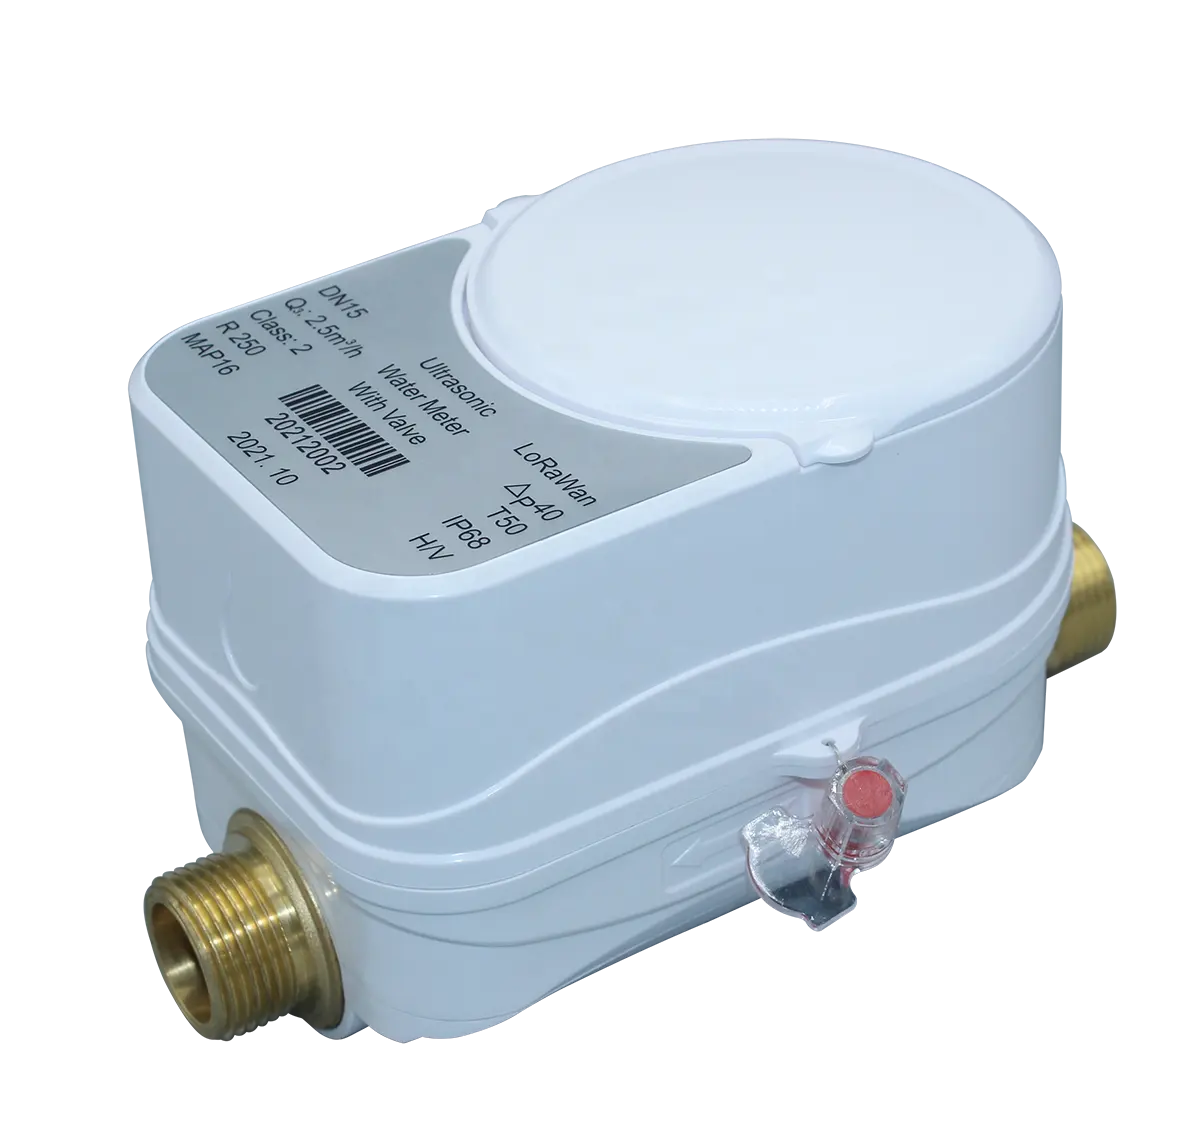 Compteur d'eau à ultrasons, modèle à bas prix, LoRawan Mbus Modbus numérique intelligent, débitmètre d'eau à ultrasons classe B 213C